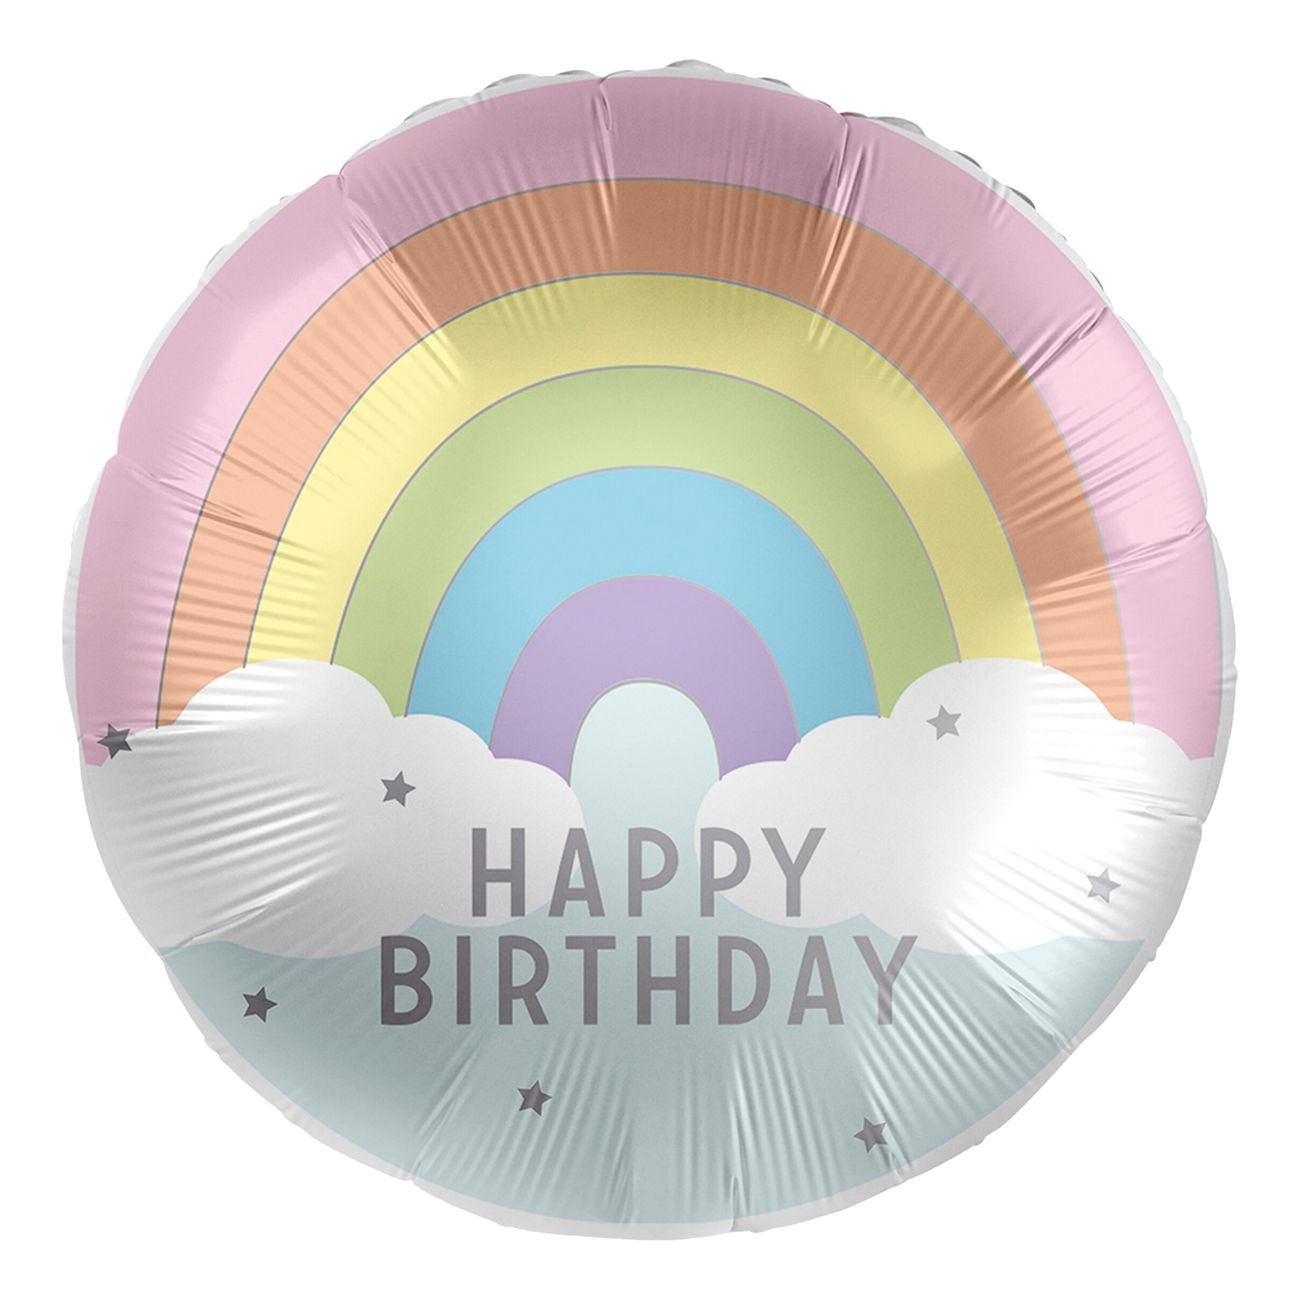 folieballong-happy-birthday-100164-1